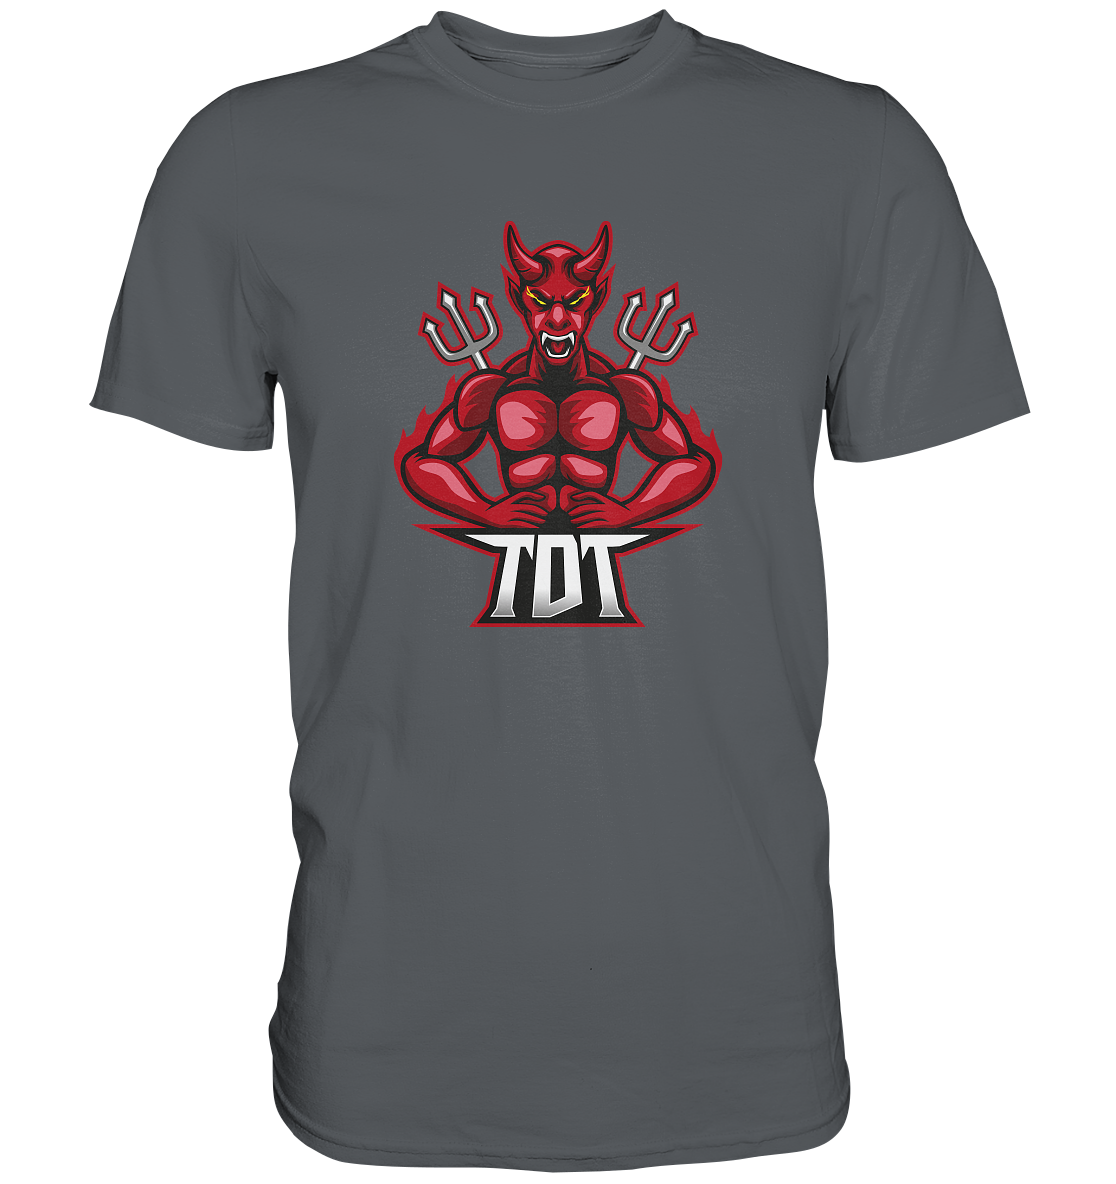 THE DEVILS TRIBE - Basic Shirt